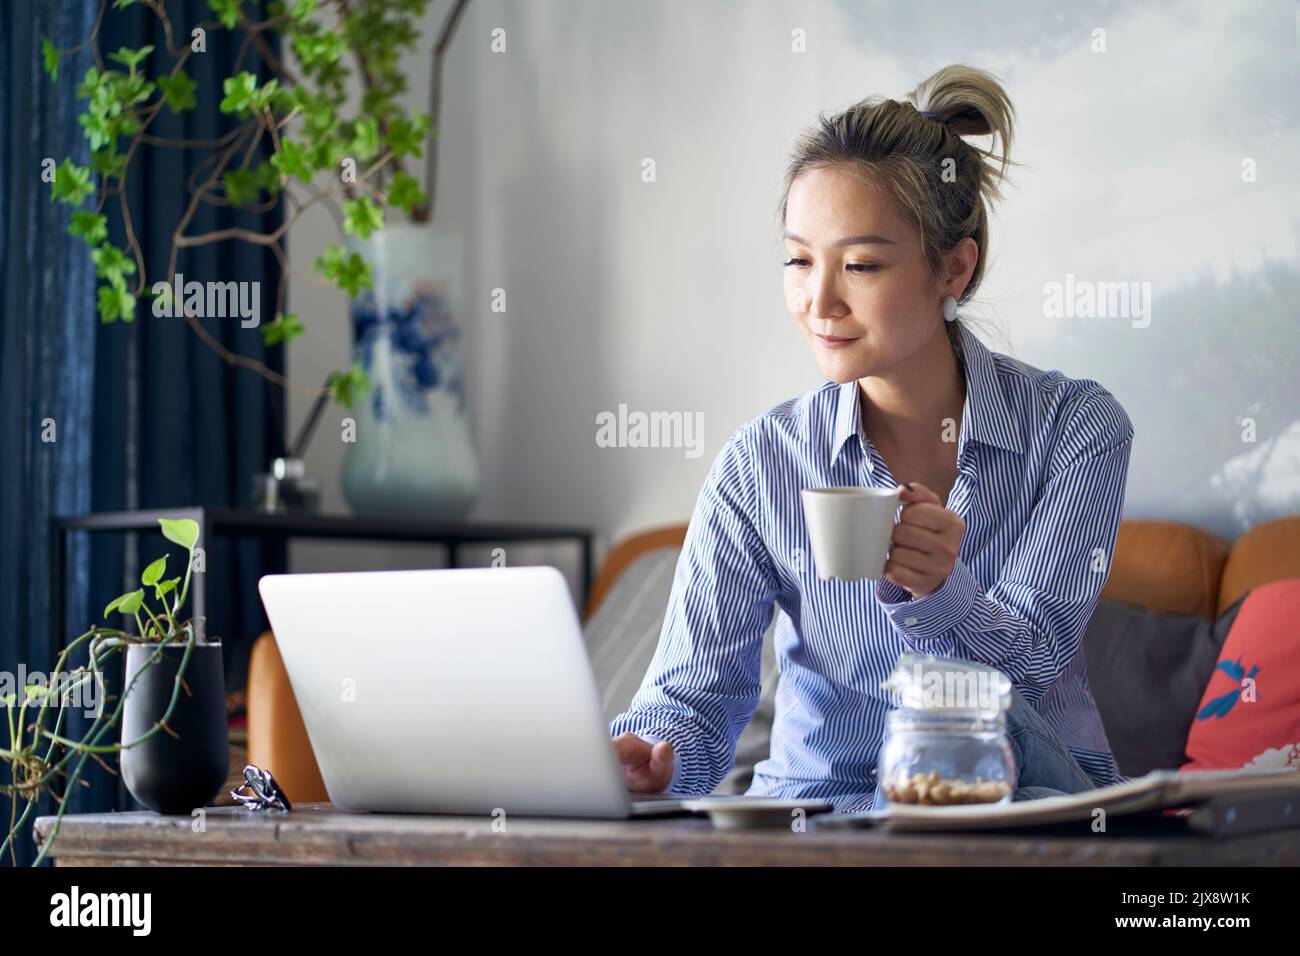 mujer asiática profesional madura que trabaja desde casa sentada en el sofá bebiendo café mientras mira la computadora portátil Foto de stock